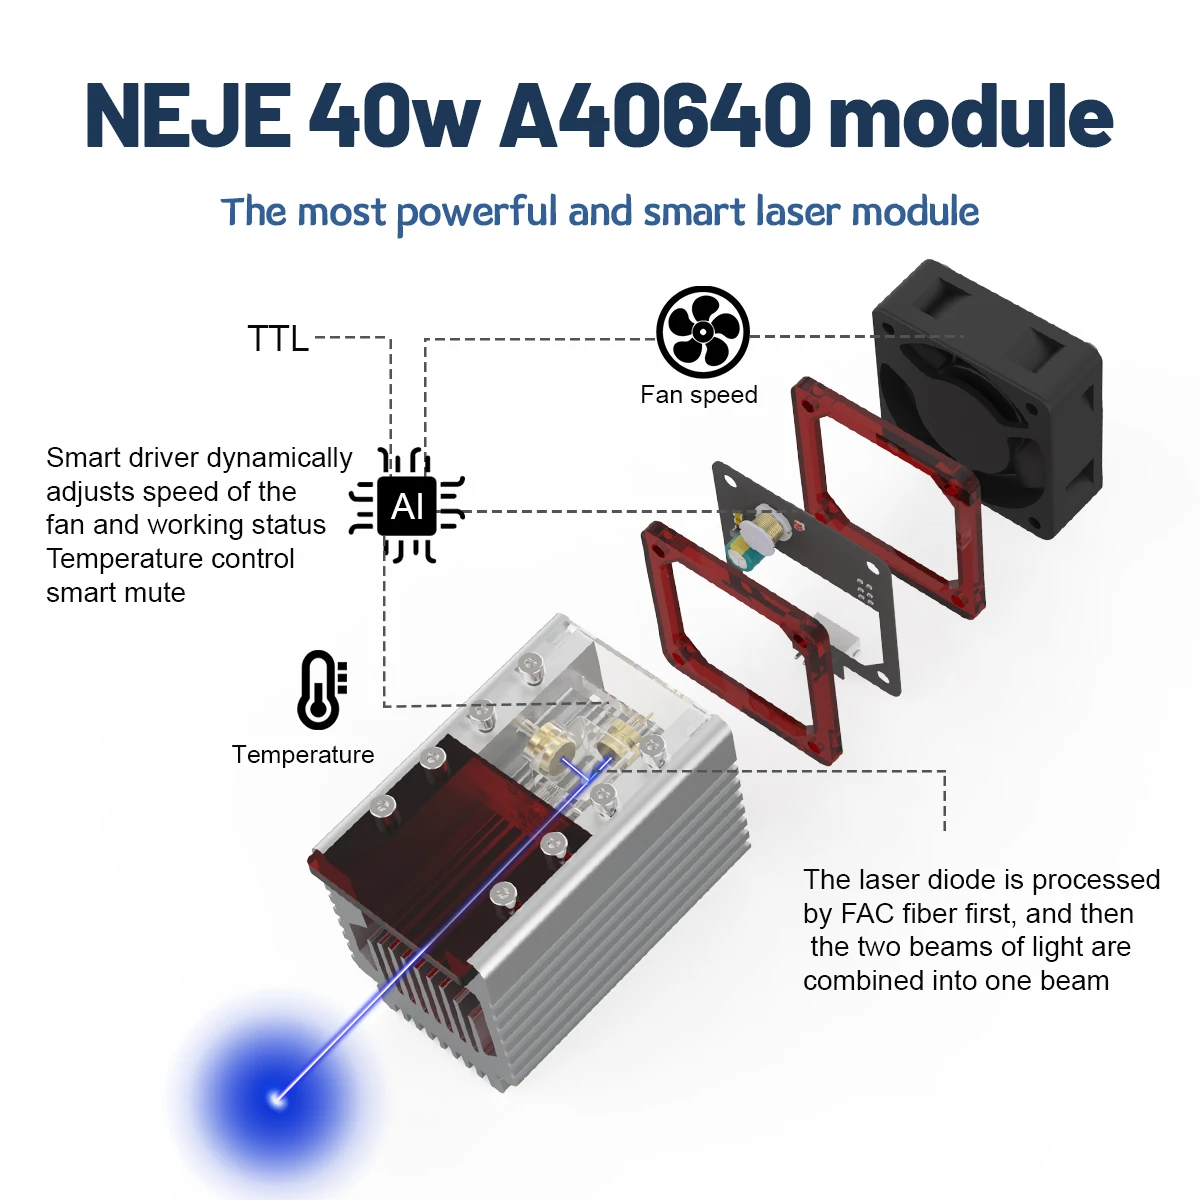 NEJE-A40640-Laser-Engraver-Cutter-Module-Kits-Double-Laser-Beam-15w-Output-Laser-For-DIY-Laser-Engra-1882454-4